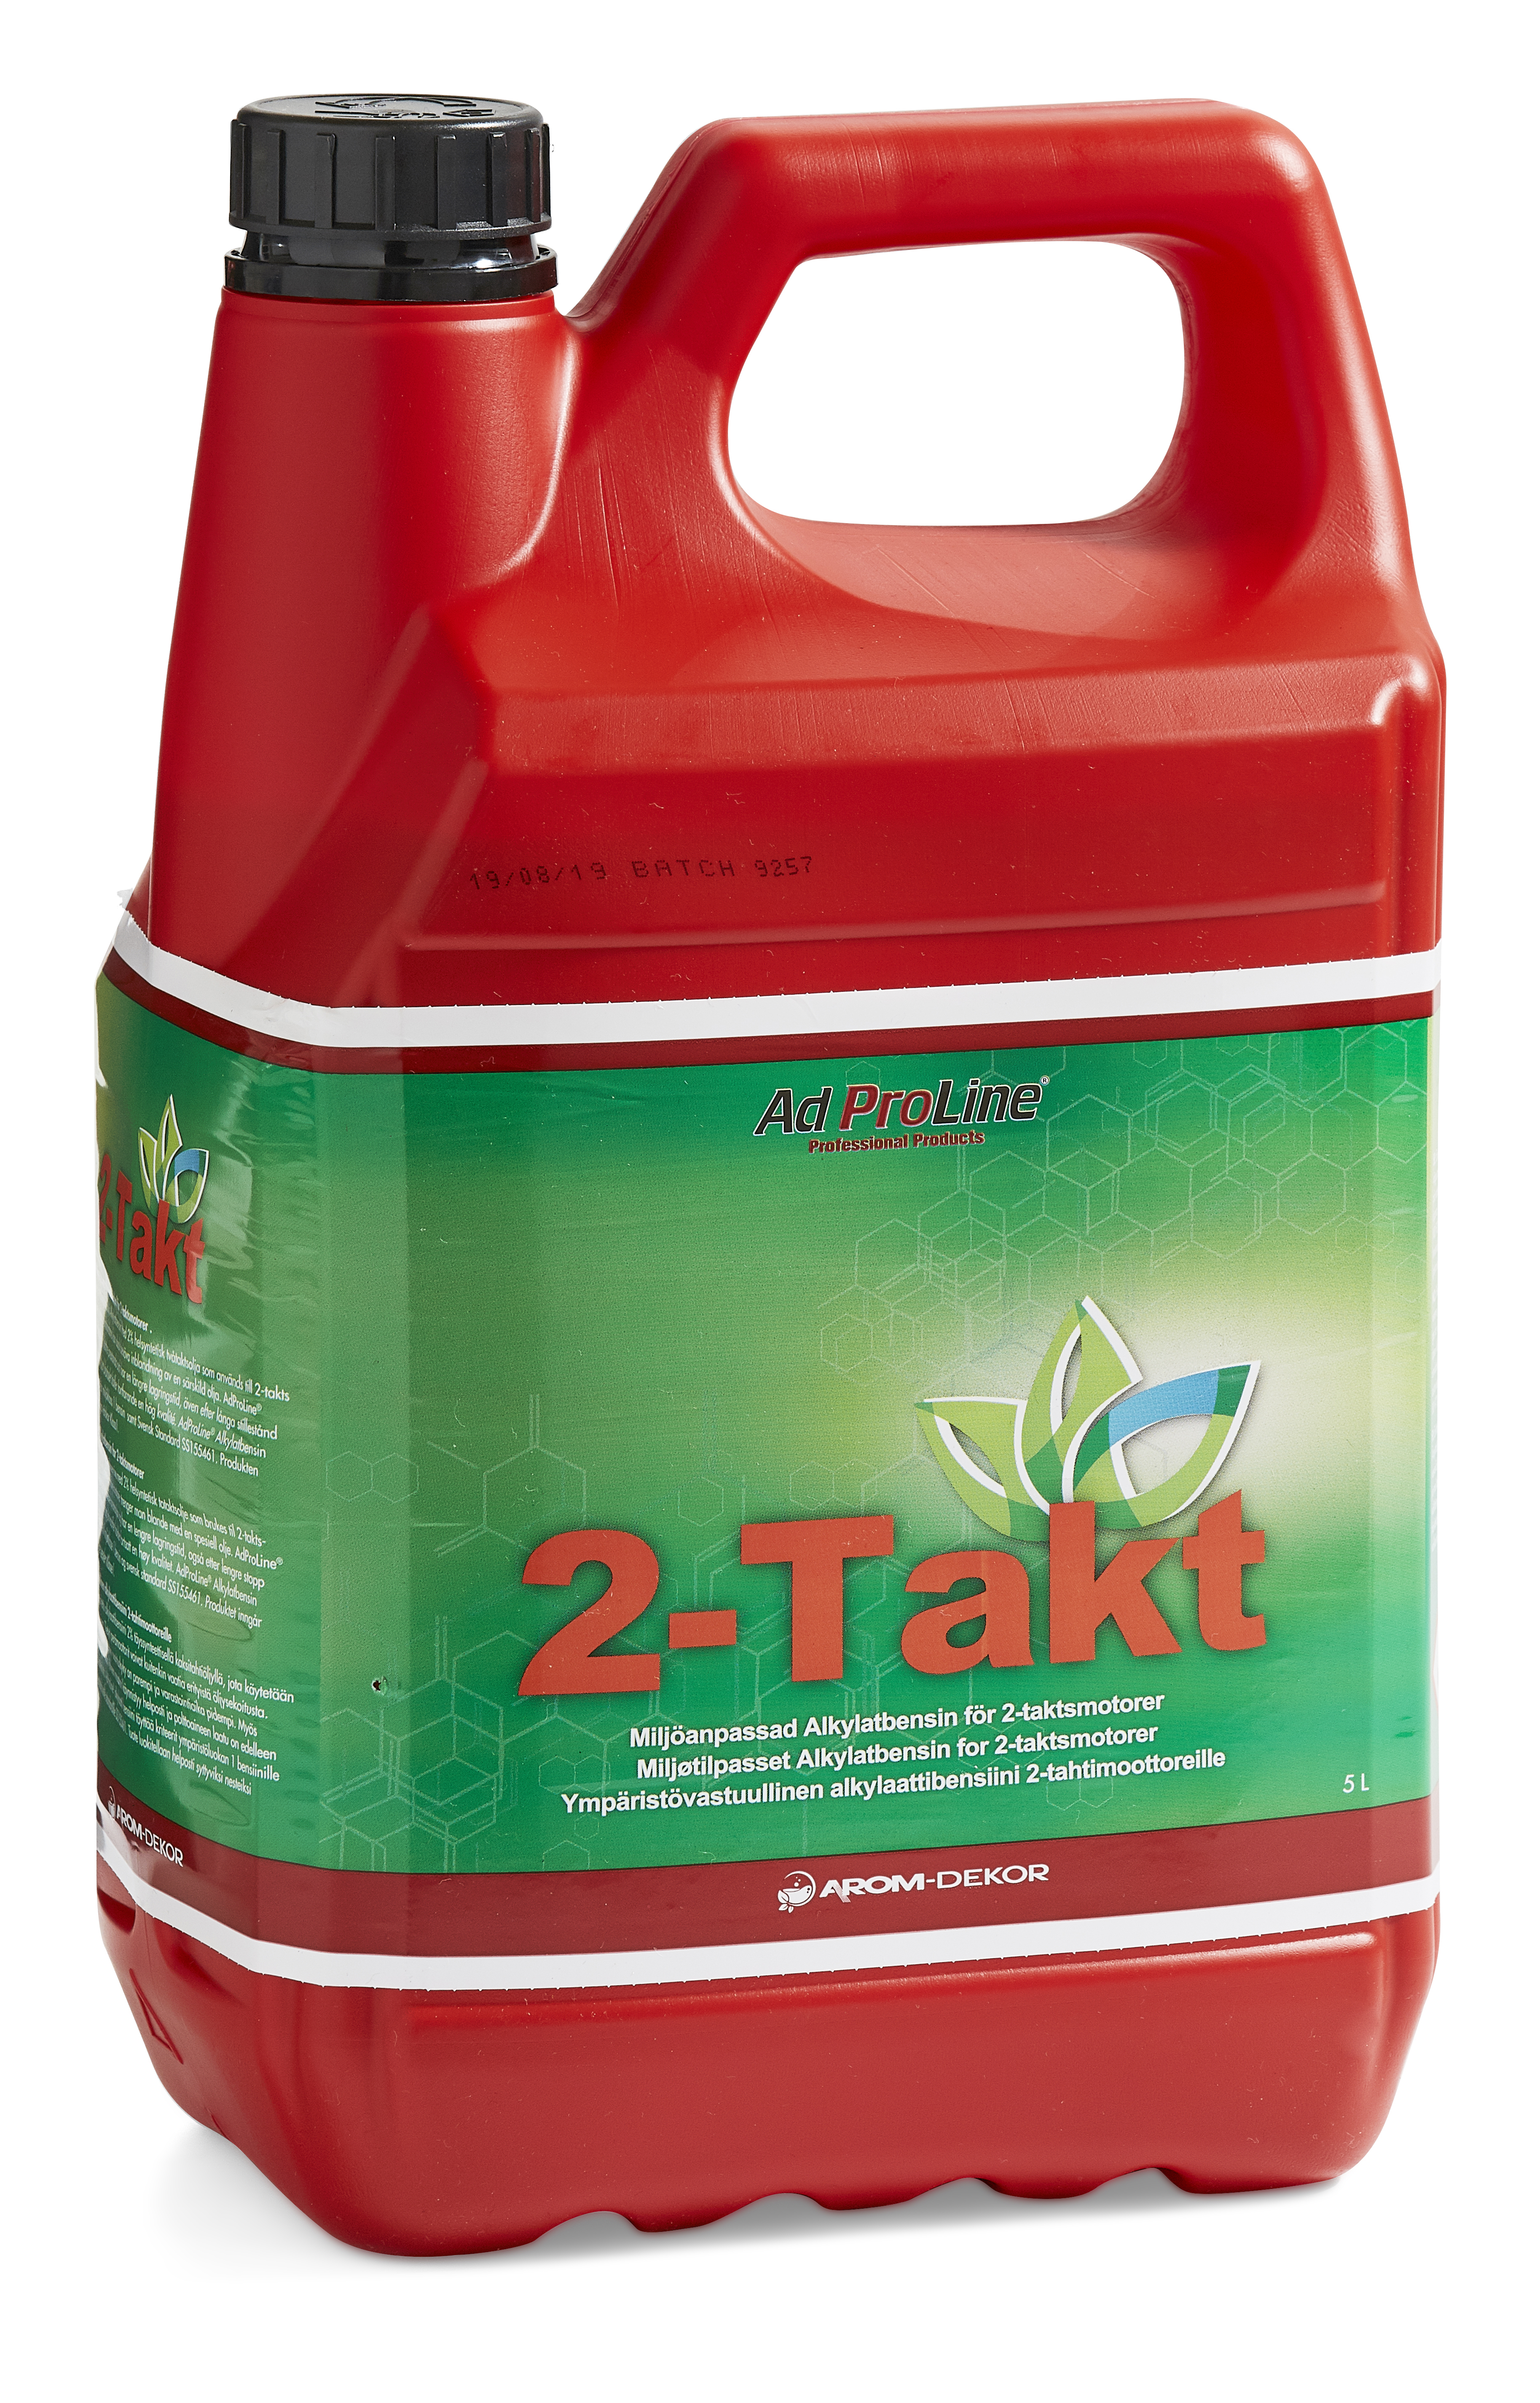 AdProLine® Alkylatbensin 2-takt, 5 liter dunk (3-pack)-image